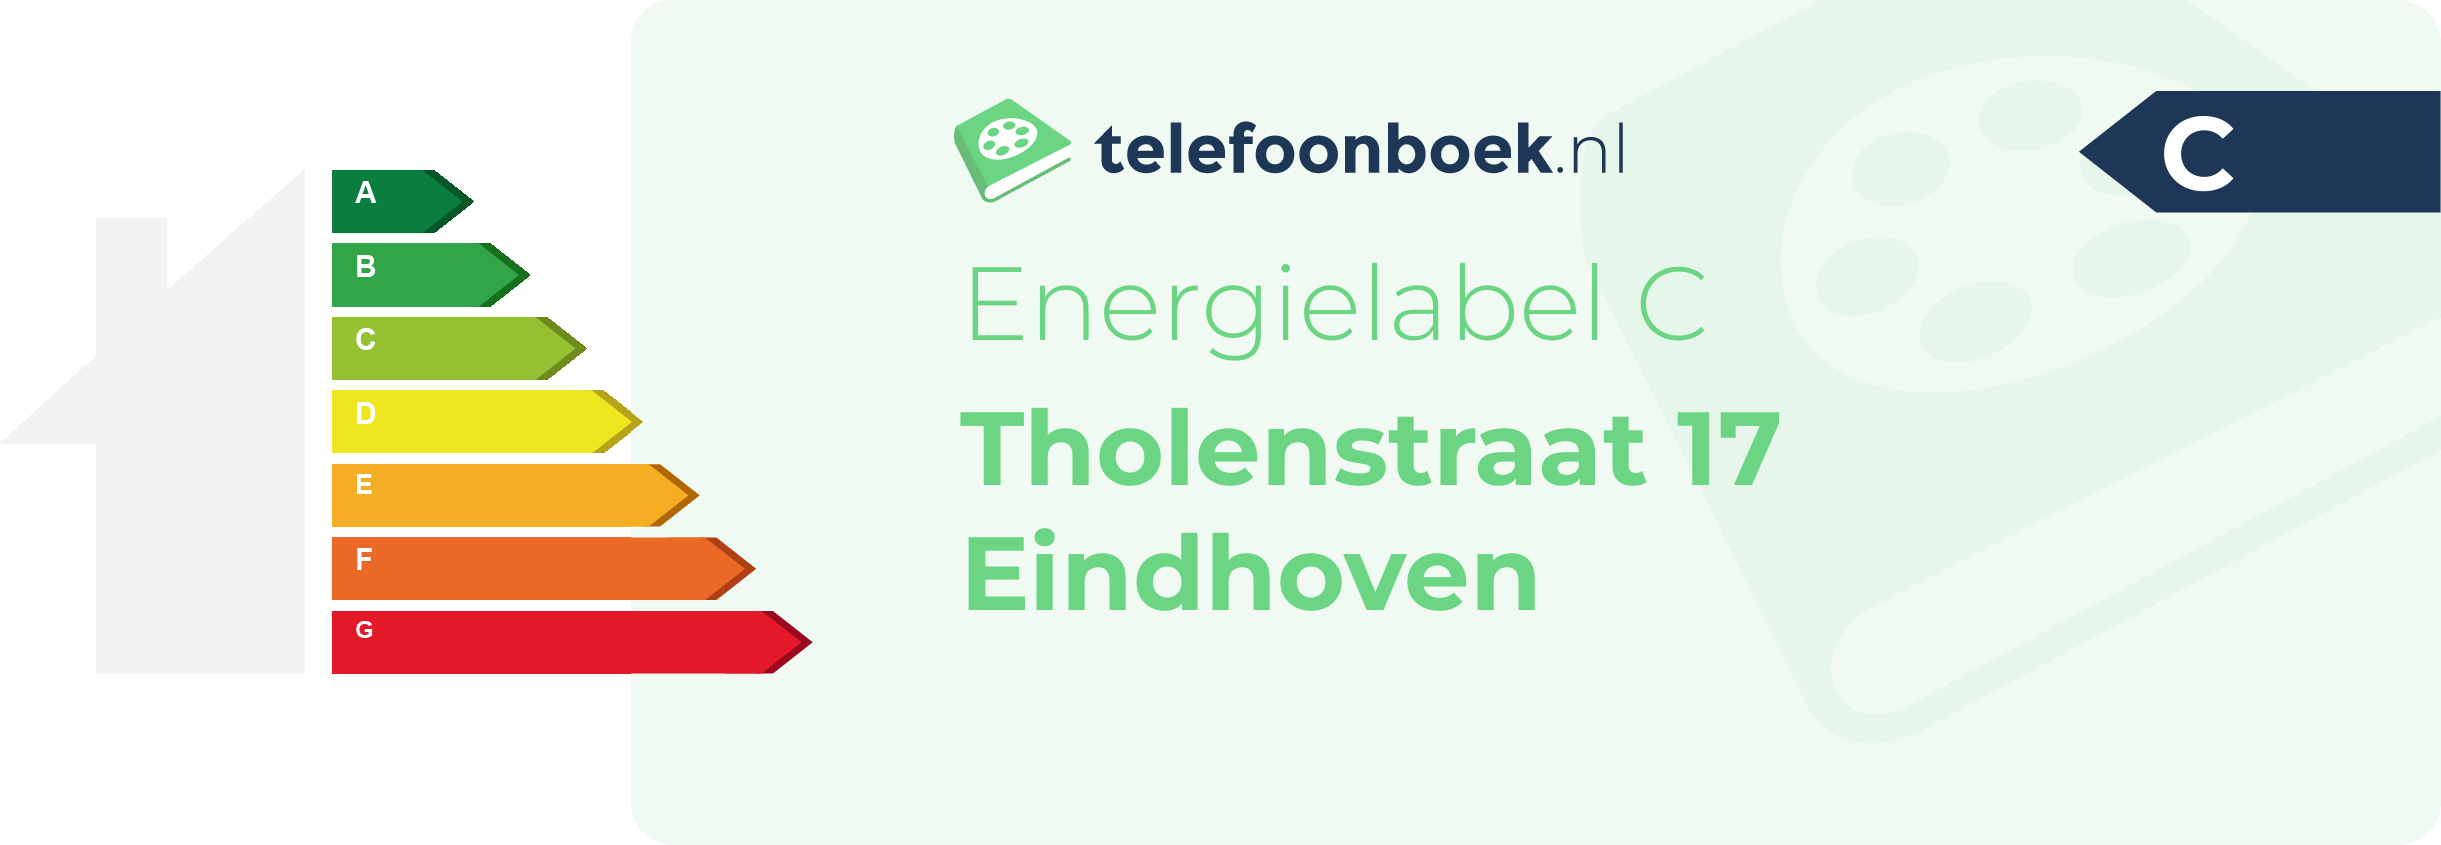 Energielabel Tholenstraat 17 Eindhoven